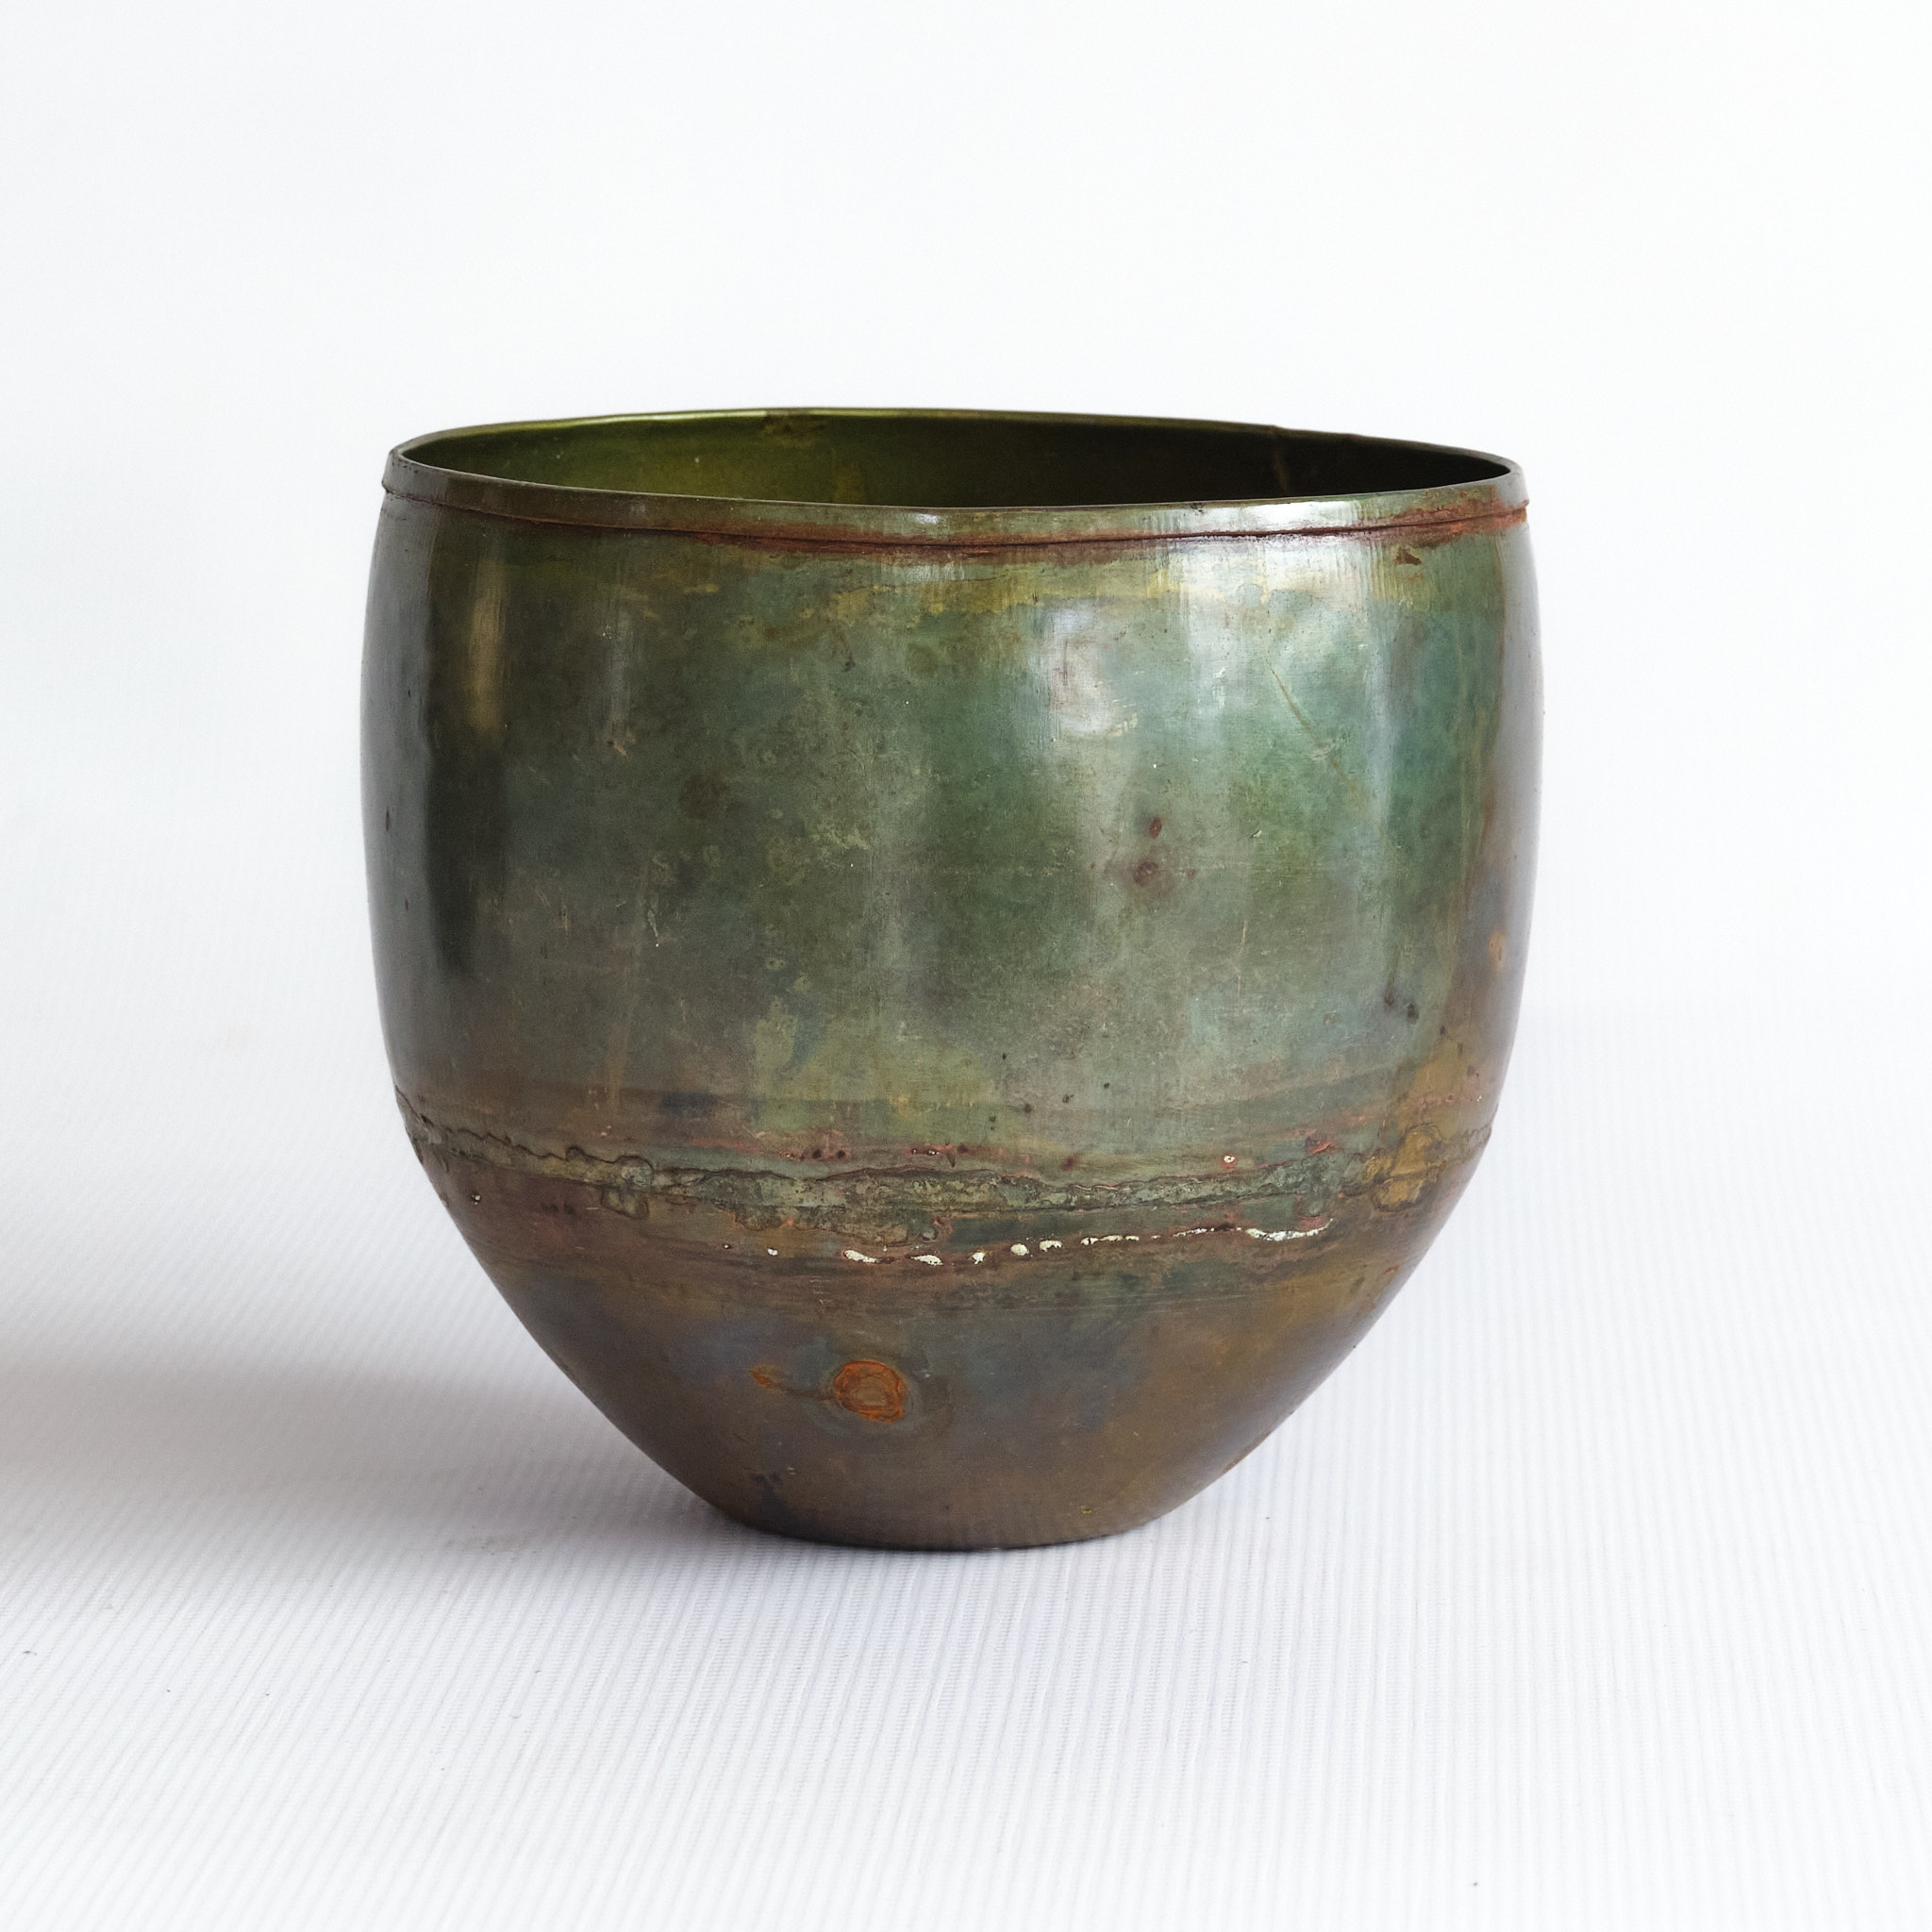 Wikholm Form Antique Green Iron Pot - 16cm